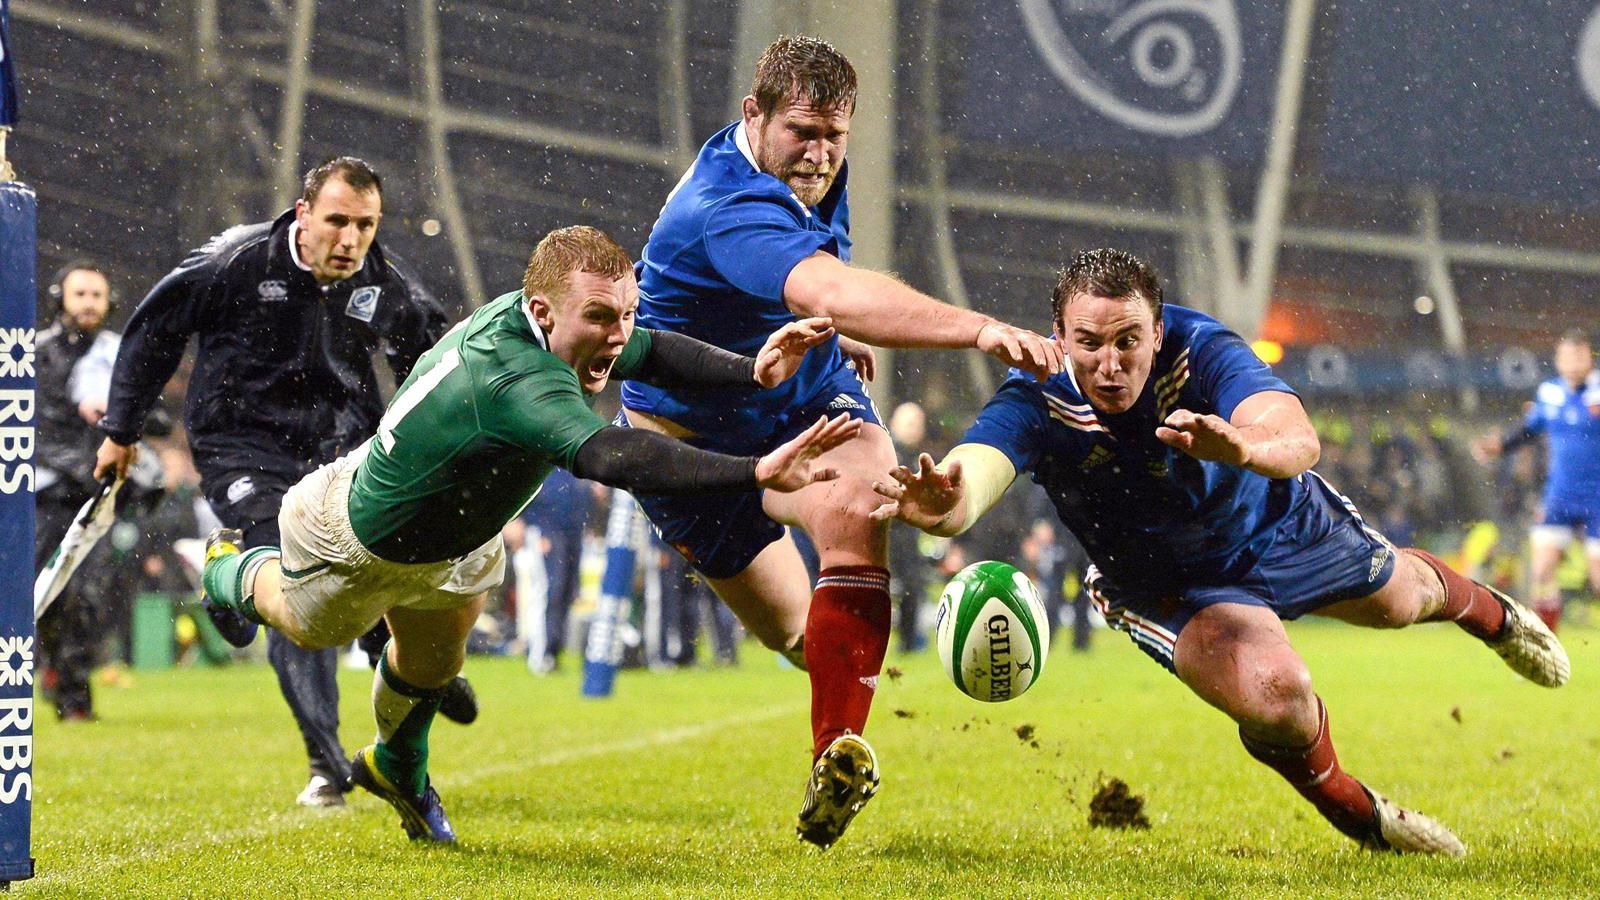 Mondial Rugby 2015: France vs Irlande en direct live